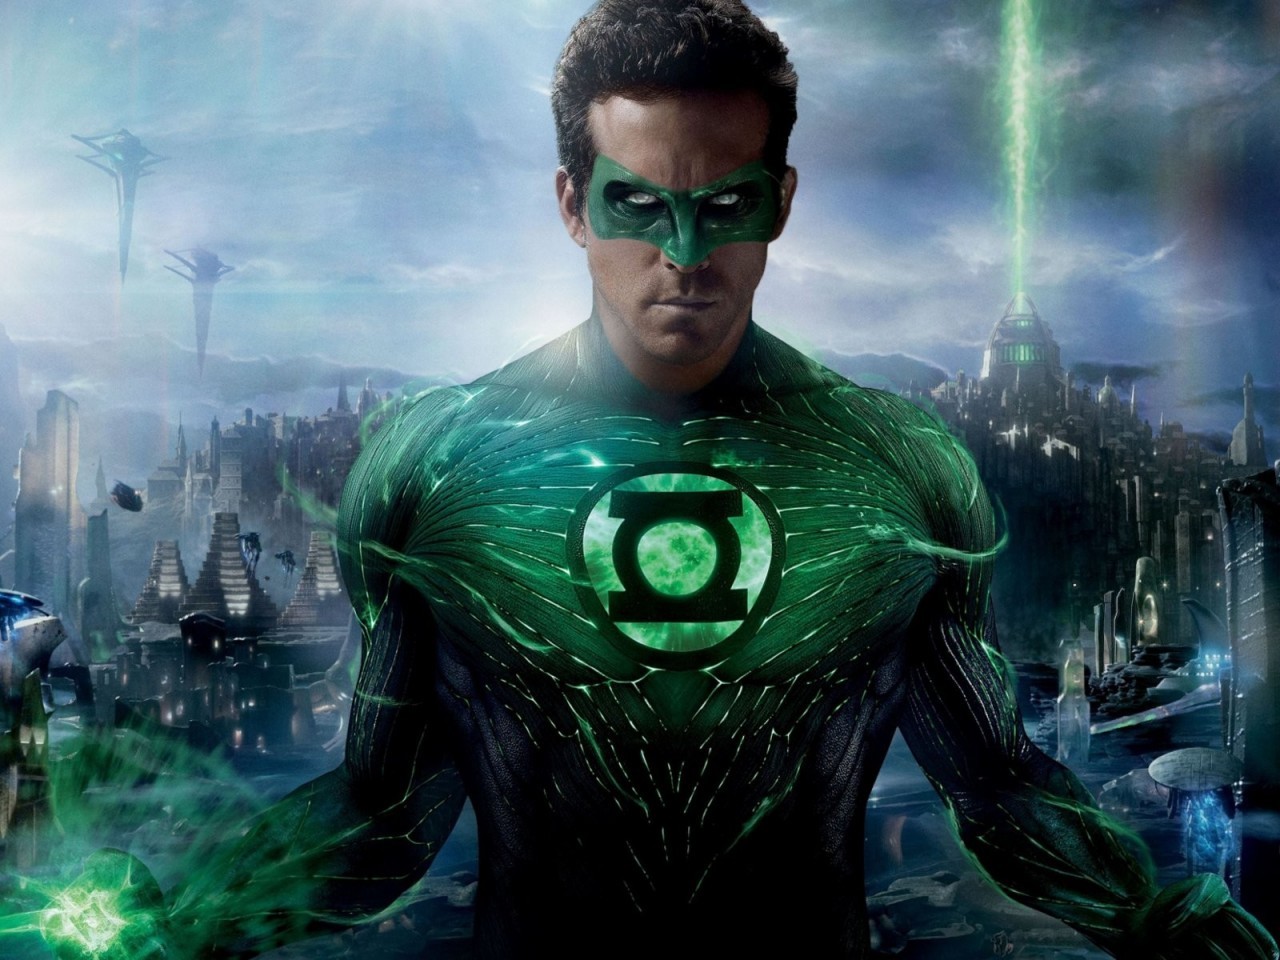 Descarga gratuita de fondo de pantalla para móvil de Green Lantern, Actores, Ryan Reynolds, Personas, Hombres, Cine.